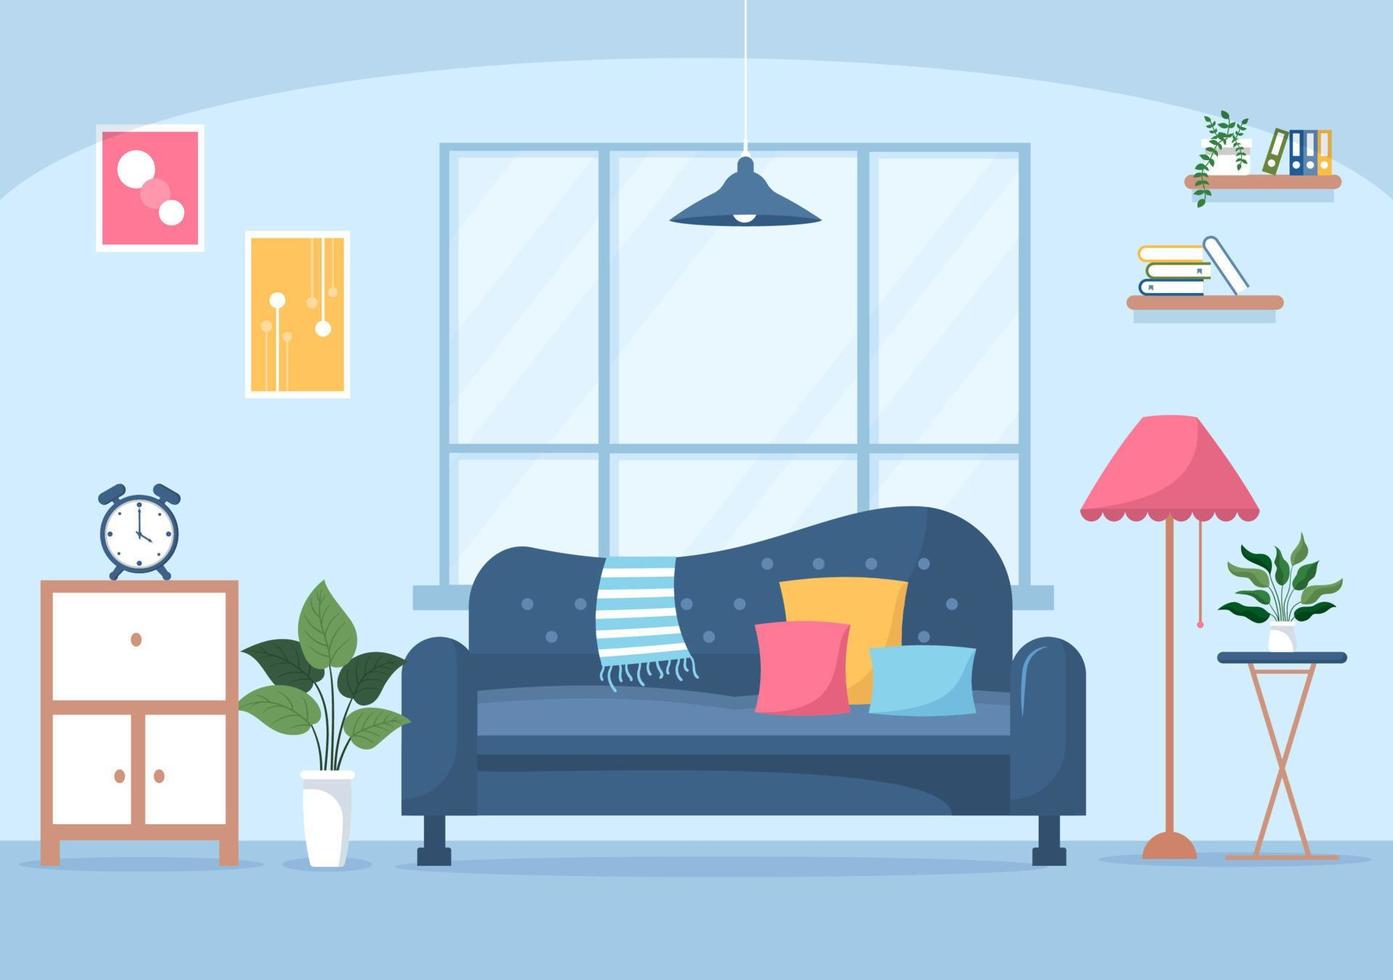 illustration de design plat de meubles de maison pour que le salon soit confortable comme un canapé, un bureau, un placard, des lumières, des plantes et des tentures murales vecteur